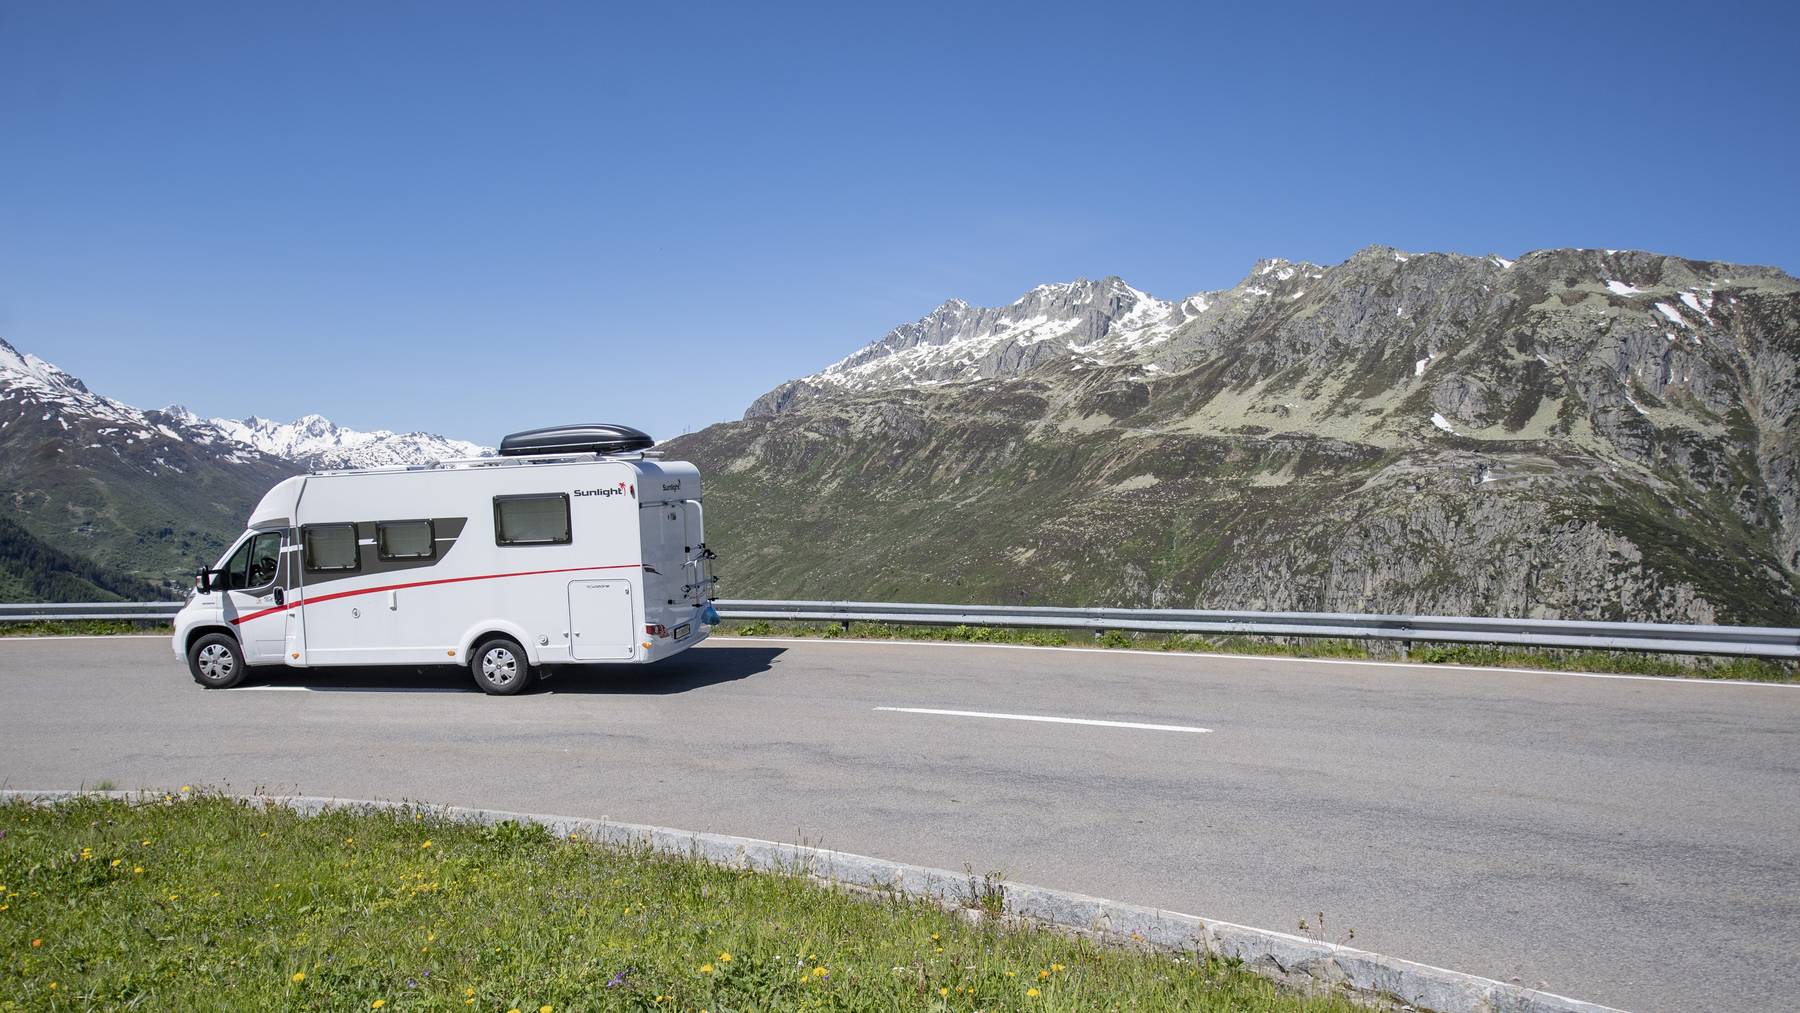 Die Schweizer fahren heuer lieber denn je mit dem Camper in die Ferien. Dies zeigt sich deutlich in dem Wachstum entgegen dem Markttrend.